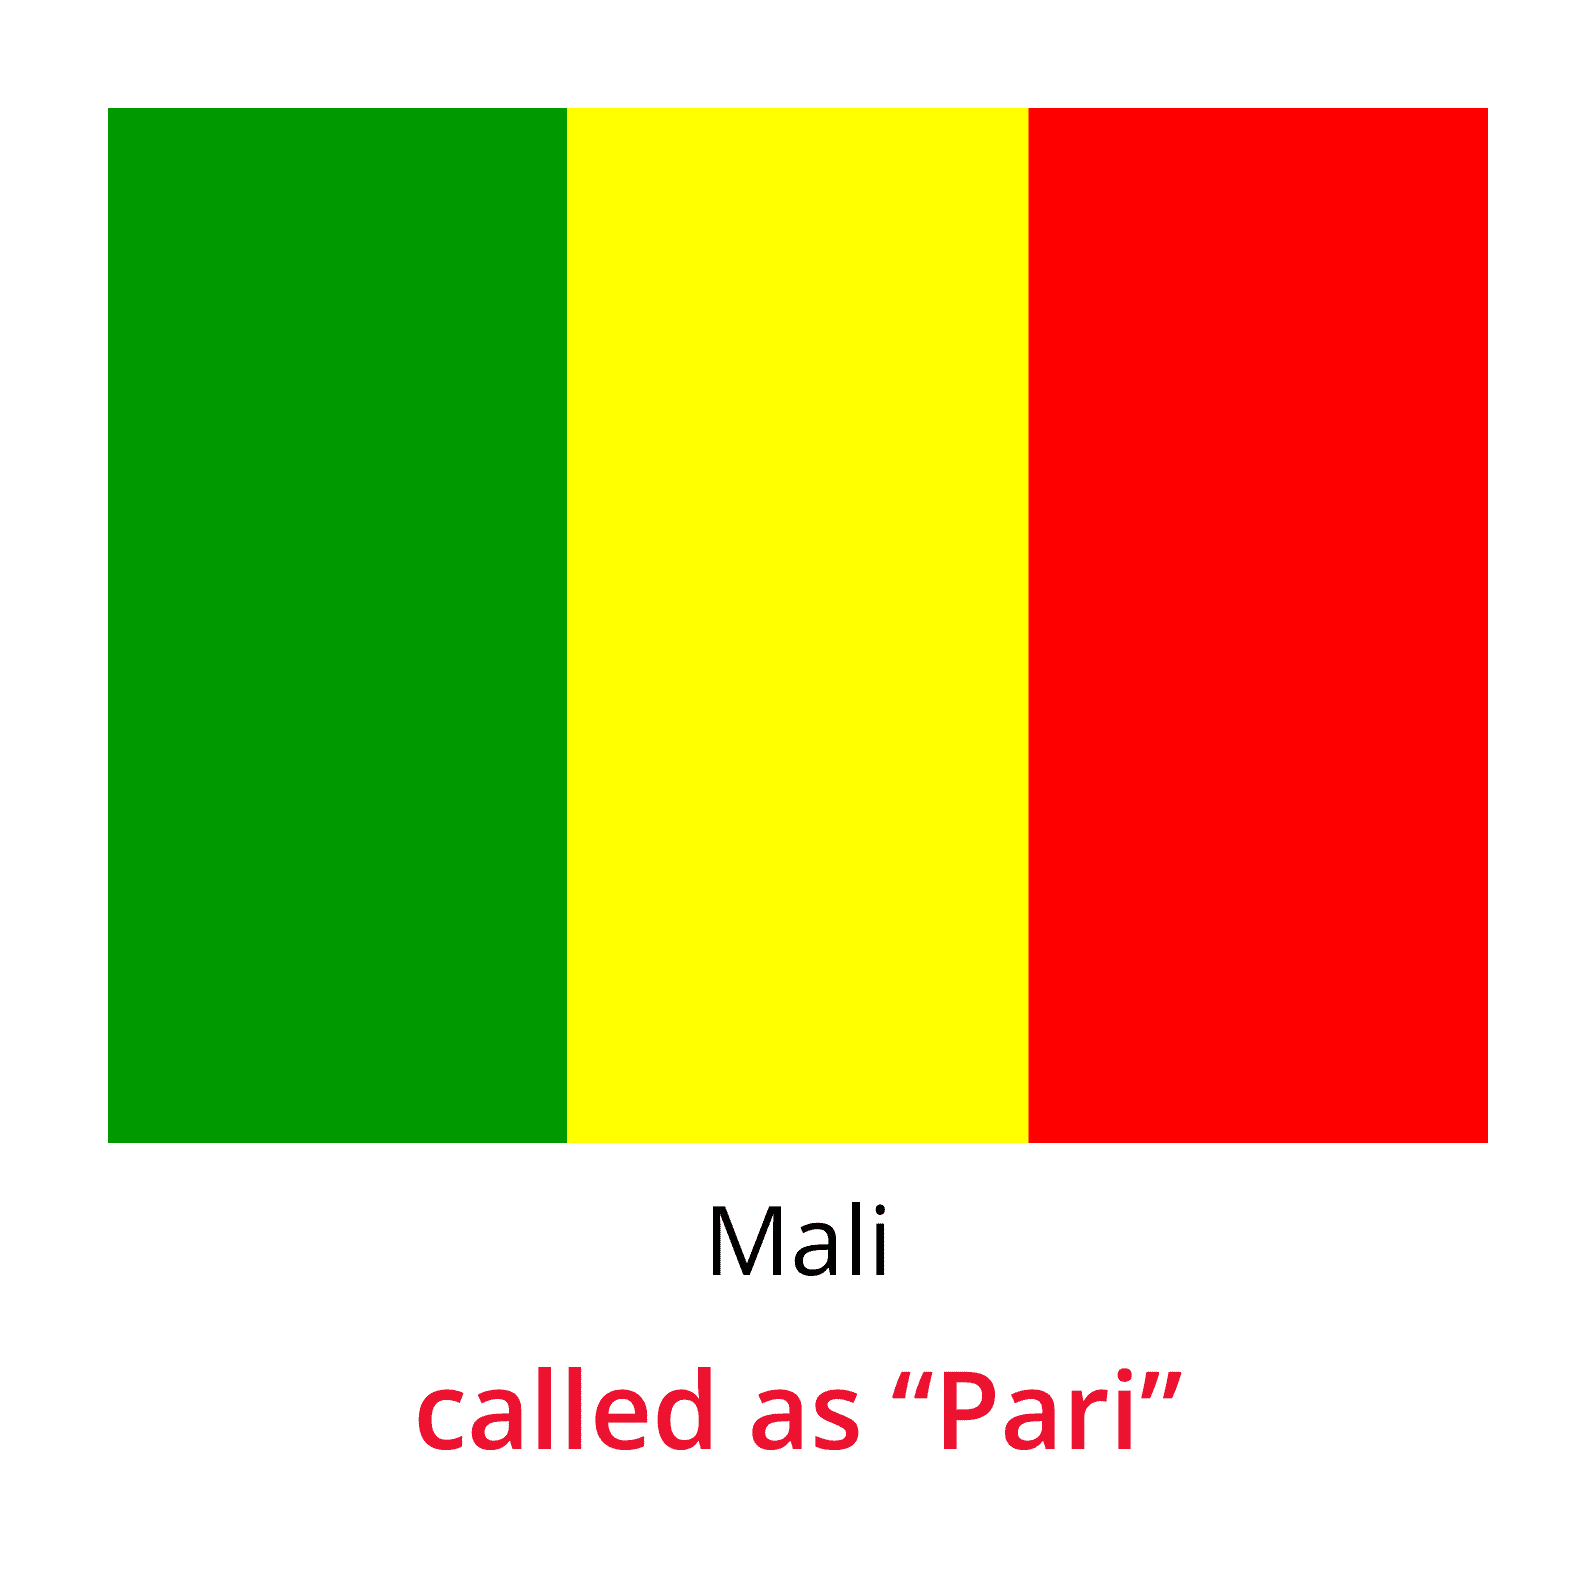 Chit fund Globally-Mali